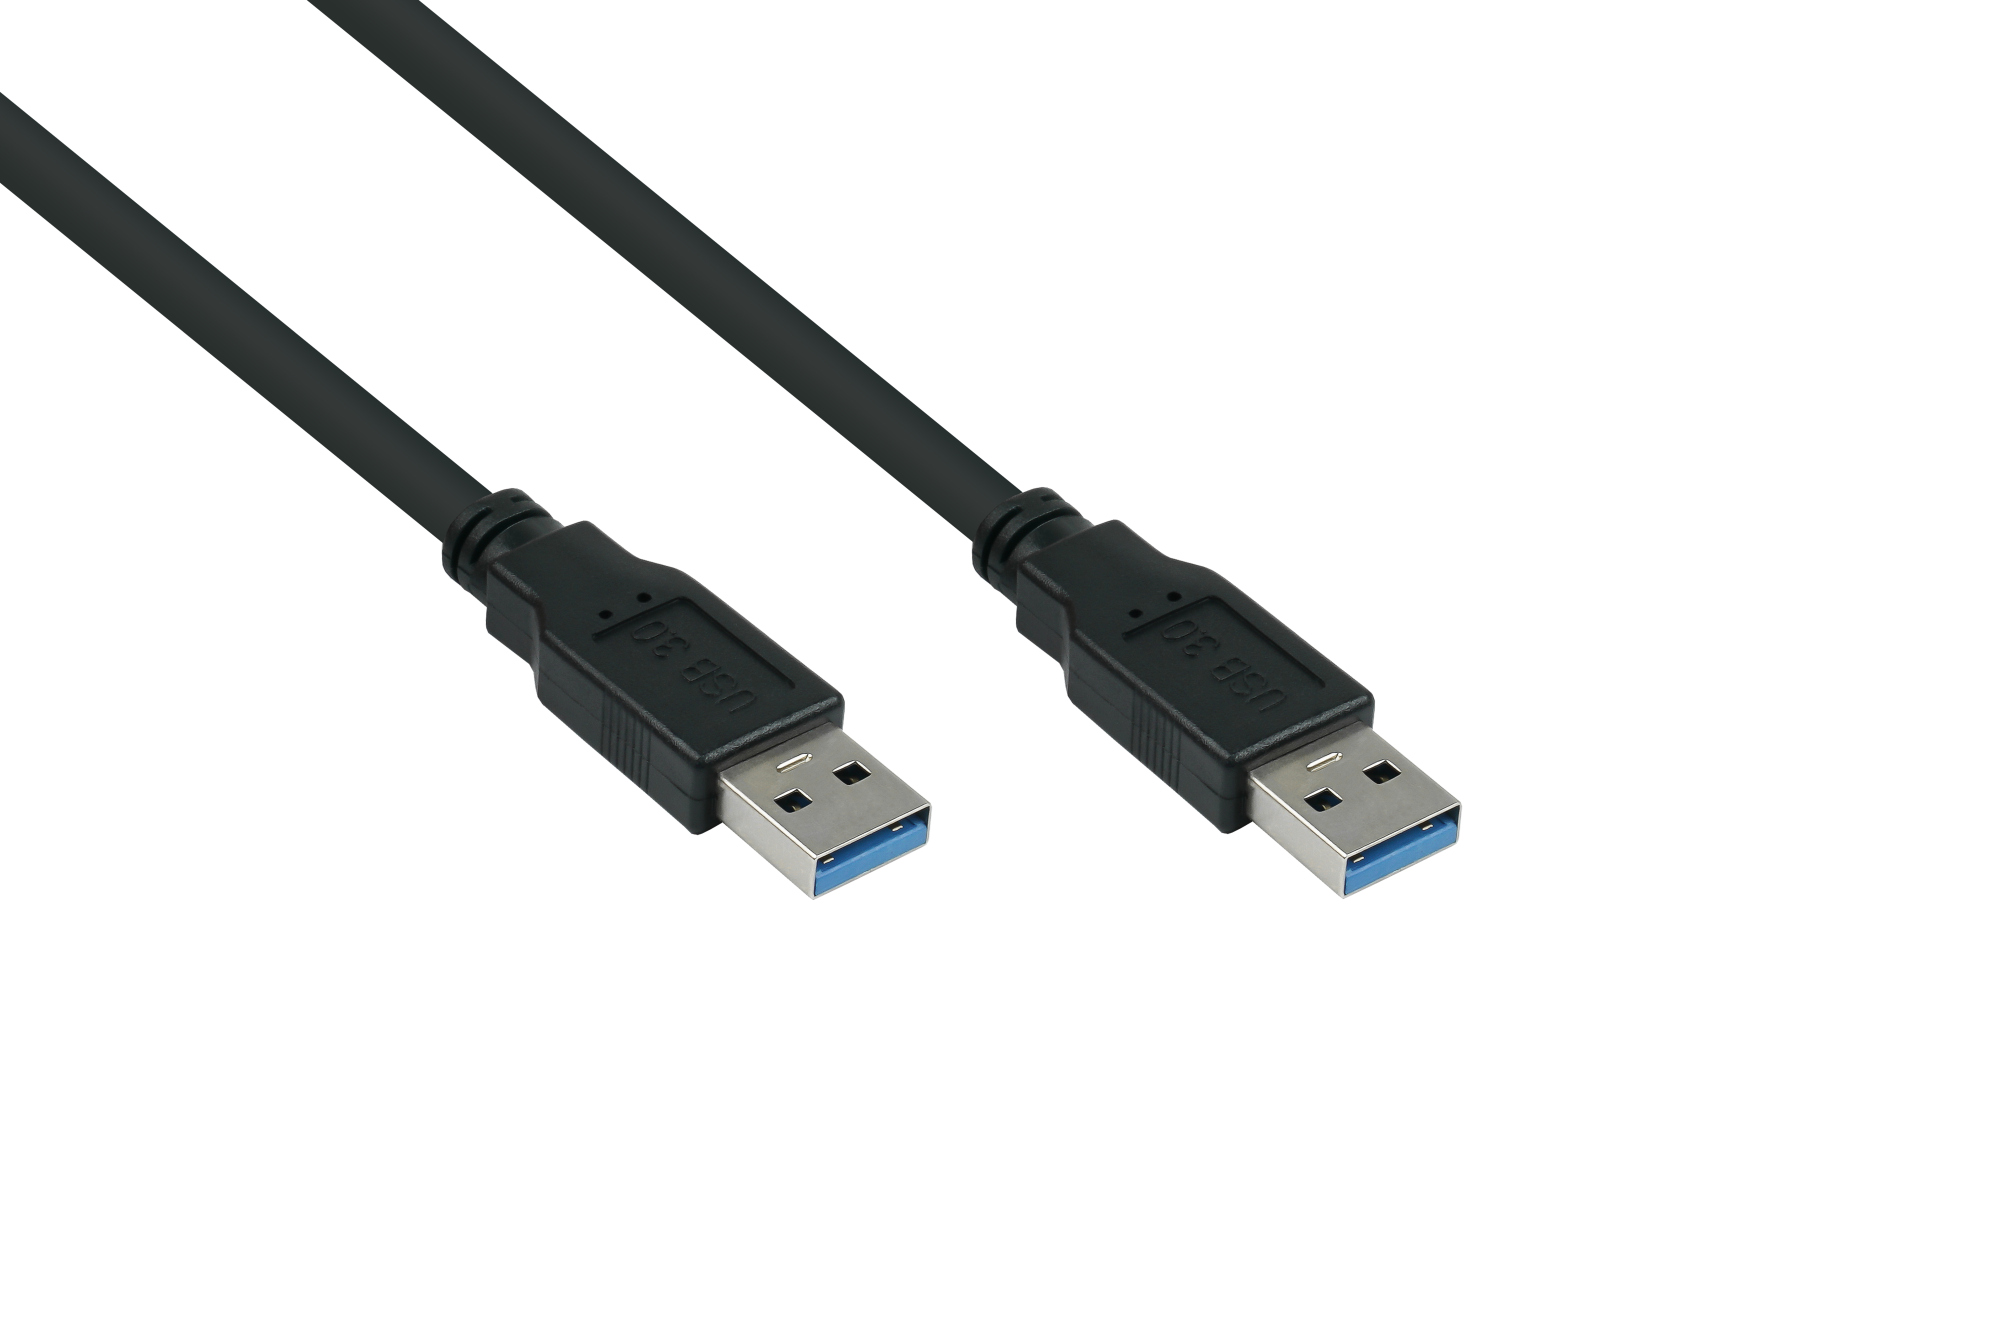 USB 3.0 Kabel Stecker A an Stecker A, Premium, AWG28 / AWG24, UL, KUPFER, schwarz, 1,8m